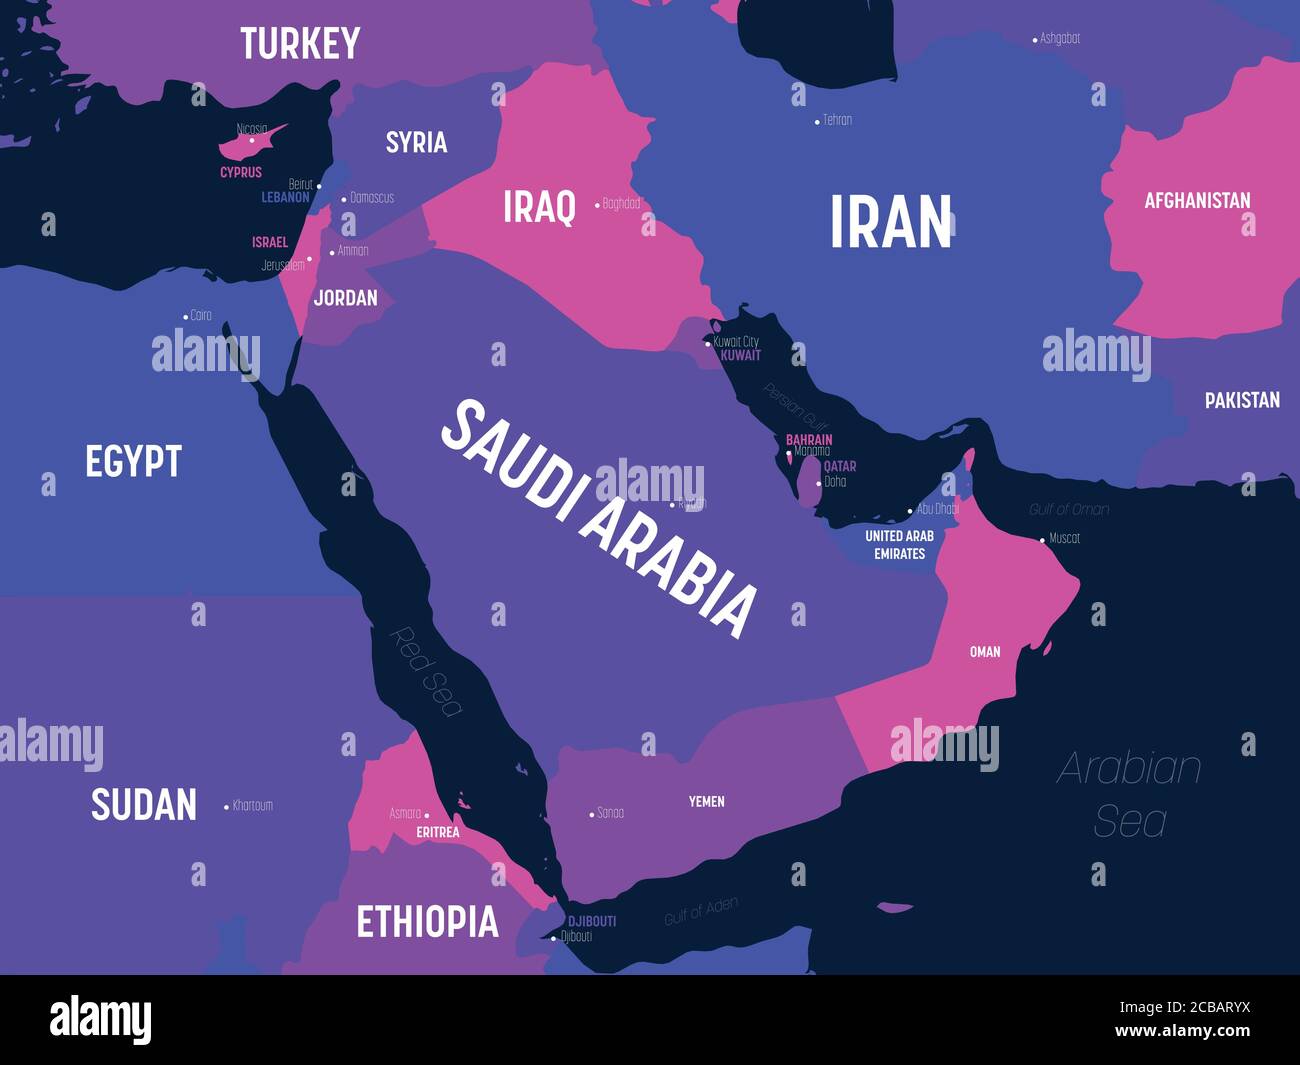 Karte für den Nahen Osten. Detaillierte politische Karte des Nahen Ostens und der arabischen Halbinsel mit Land, Hauptstadt, Meer und Meer Namen Kennzeichnung. Stock Vektor